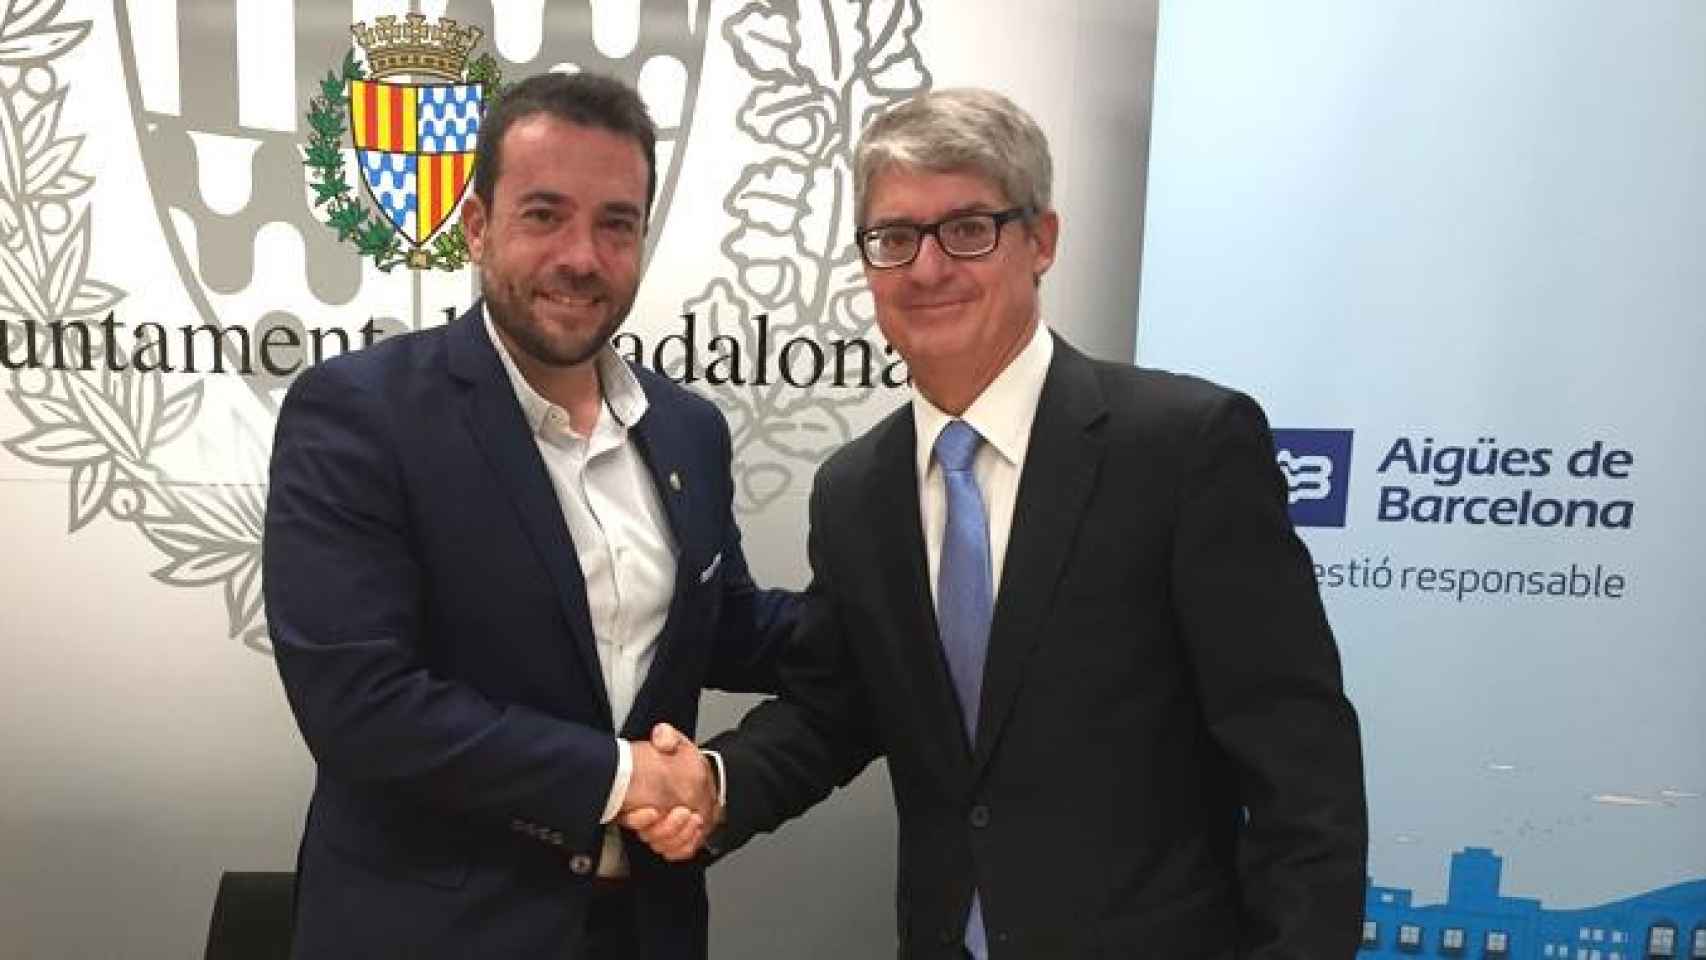 El alcalde de Badalona, Àlex Pastor, junto al director general de Aguas de Barcelona, Ignacio Escudero, tras firmar el protocolo de colaboración / CG